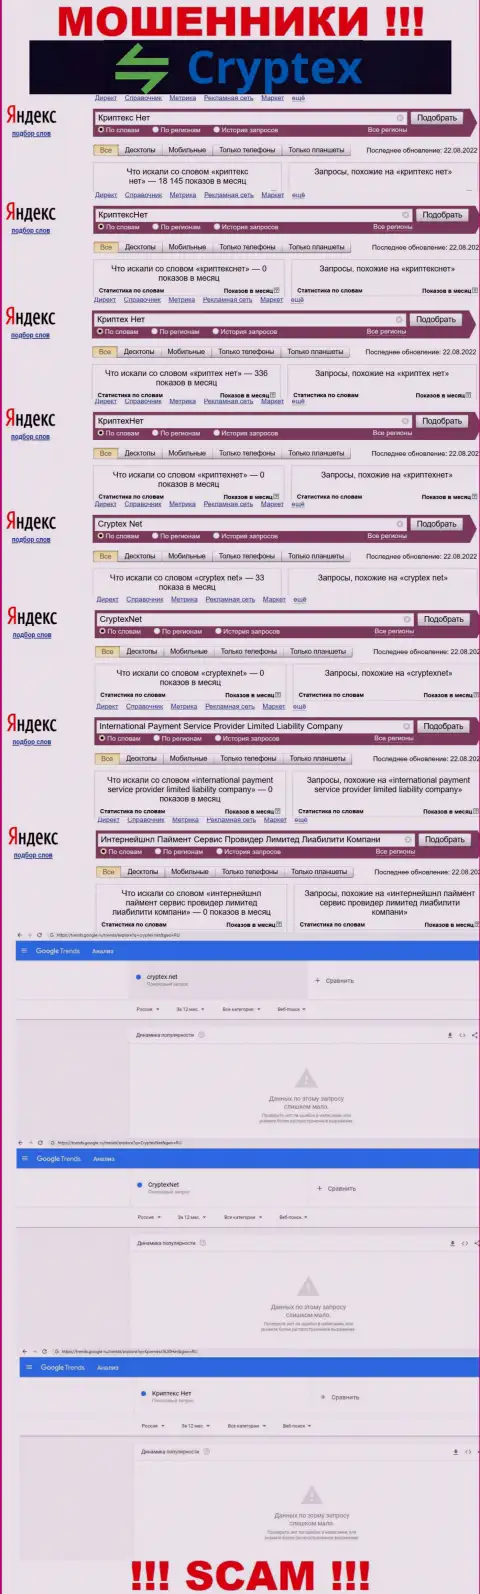 Скрин результата онлайн запросов по противоправно действующей конторе Криптекс Нет